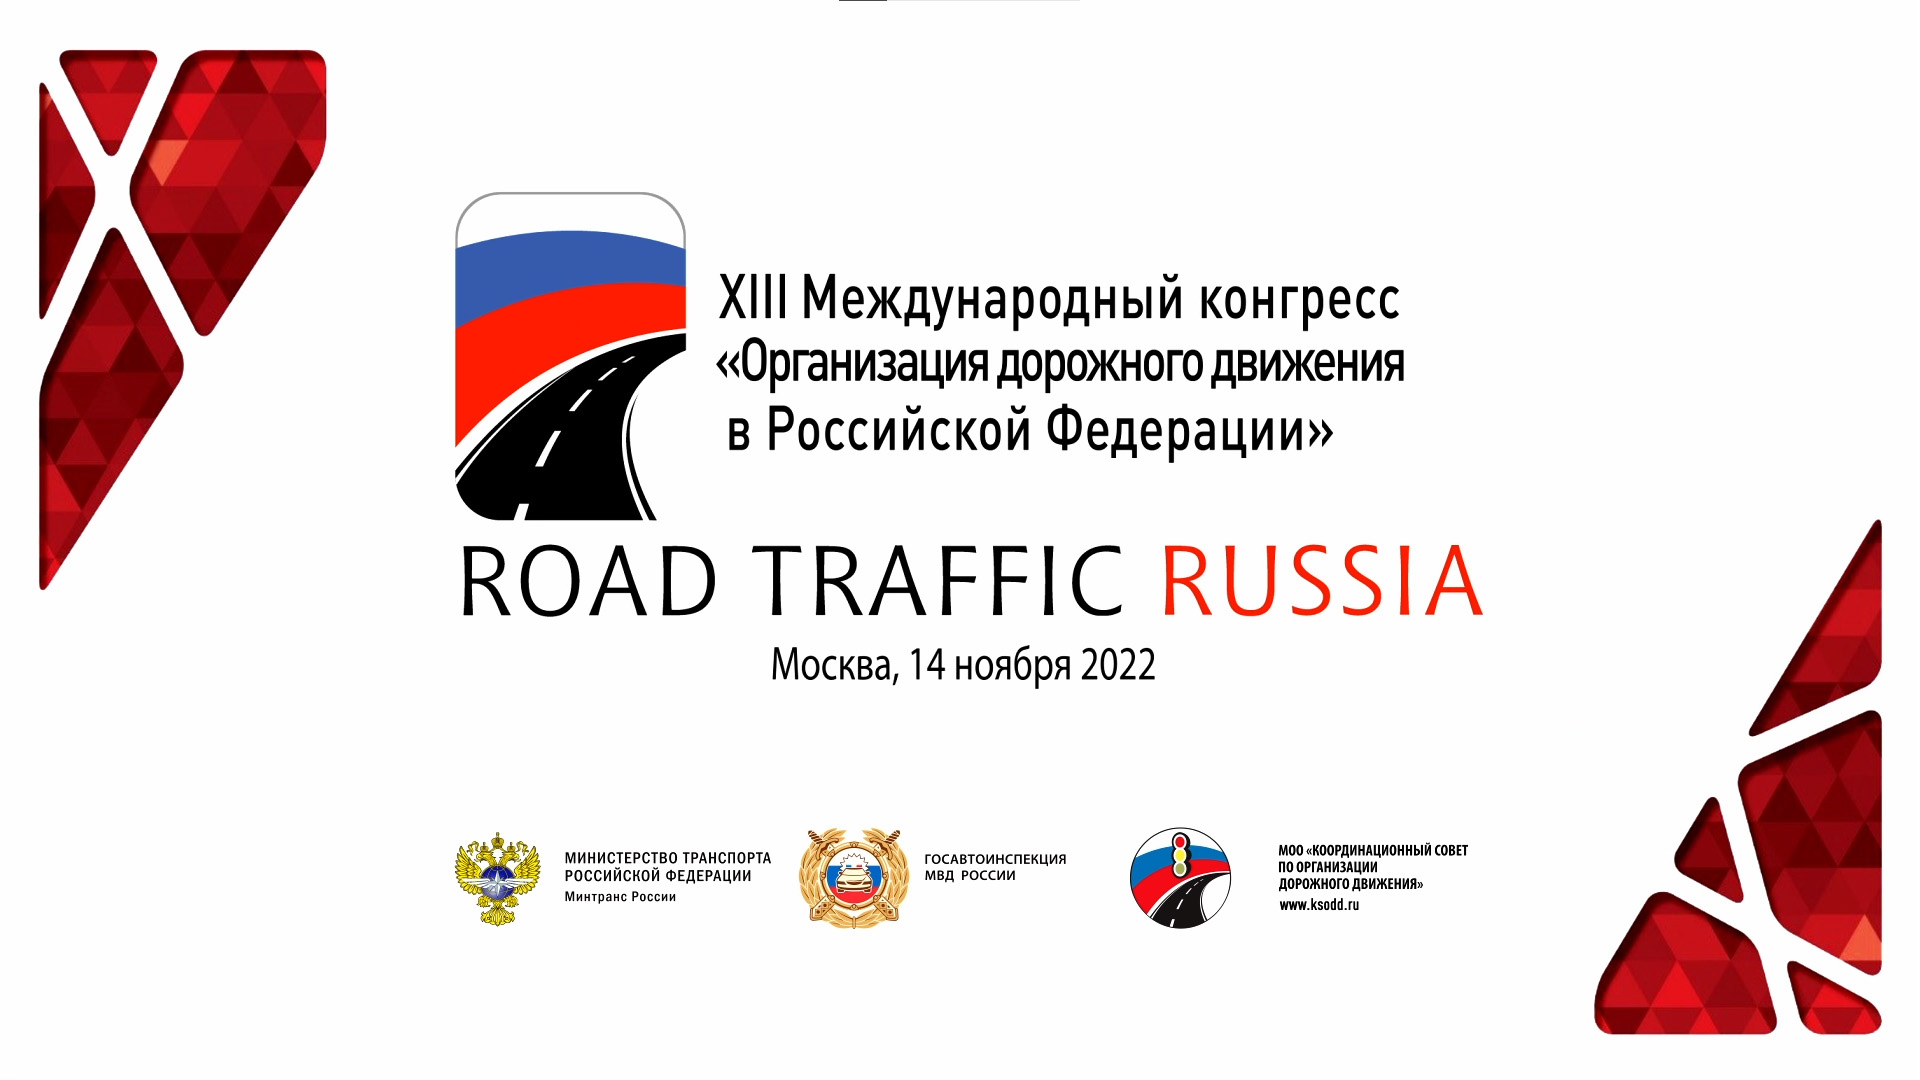 ROAD TRAFFIC RUSSIA 22